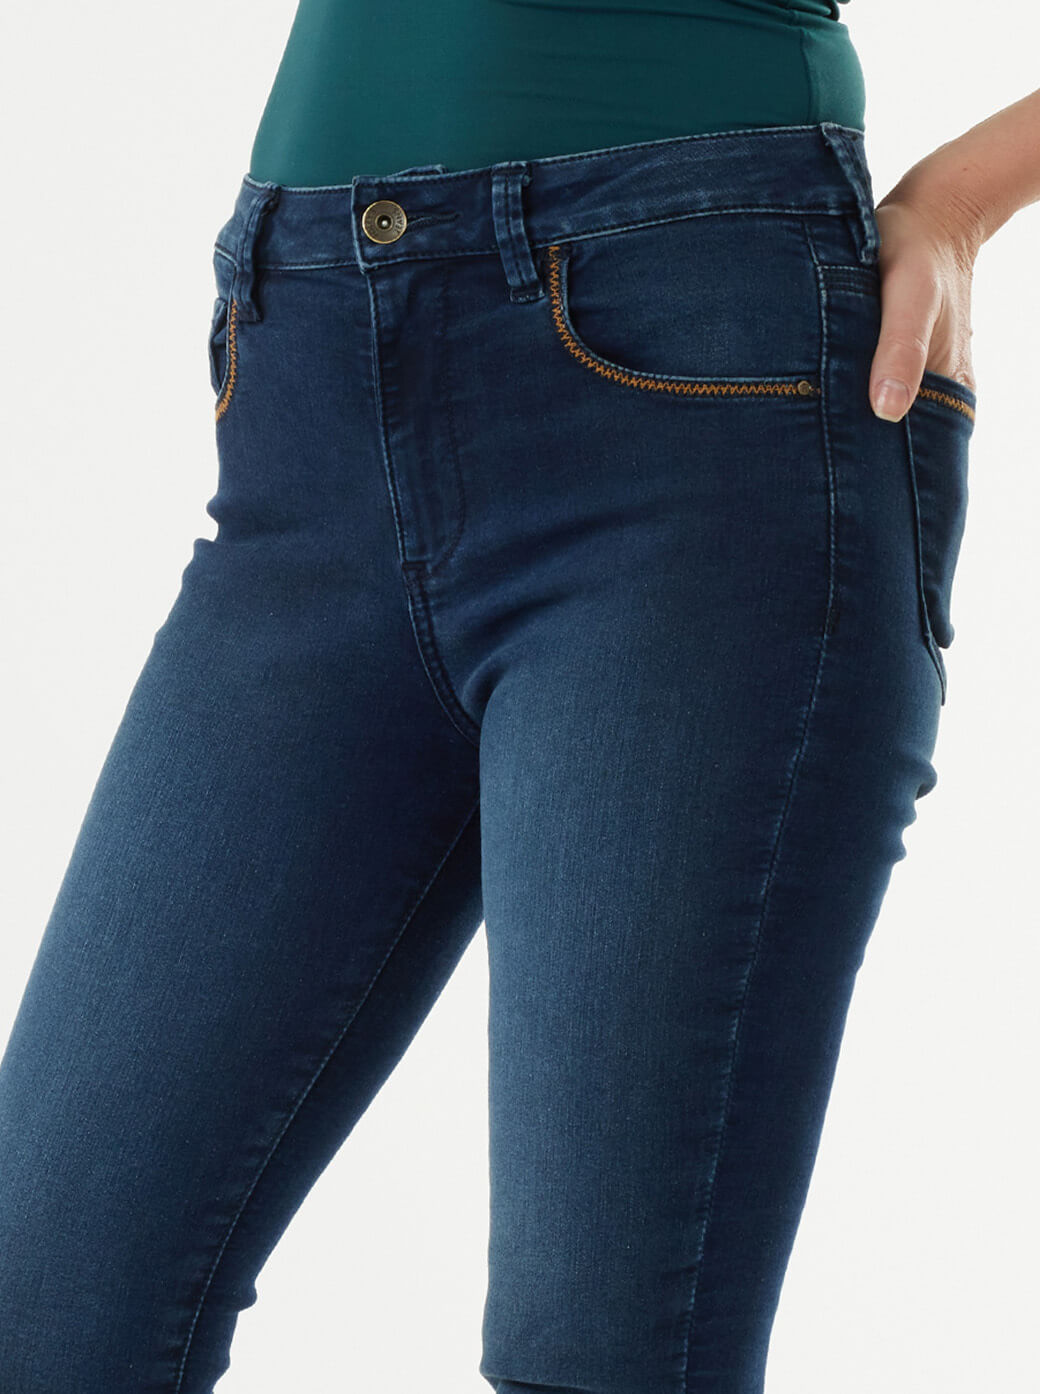 Jeans azul marino skinny con bordado Esenciales